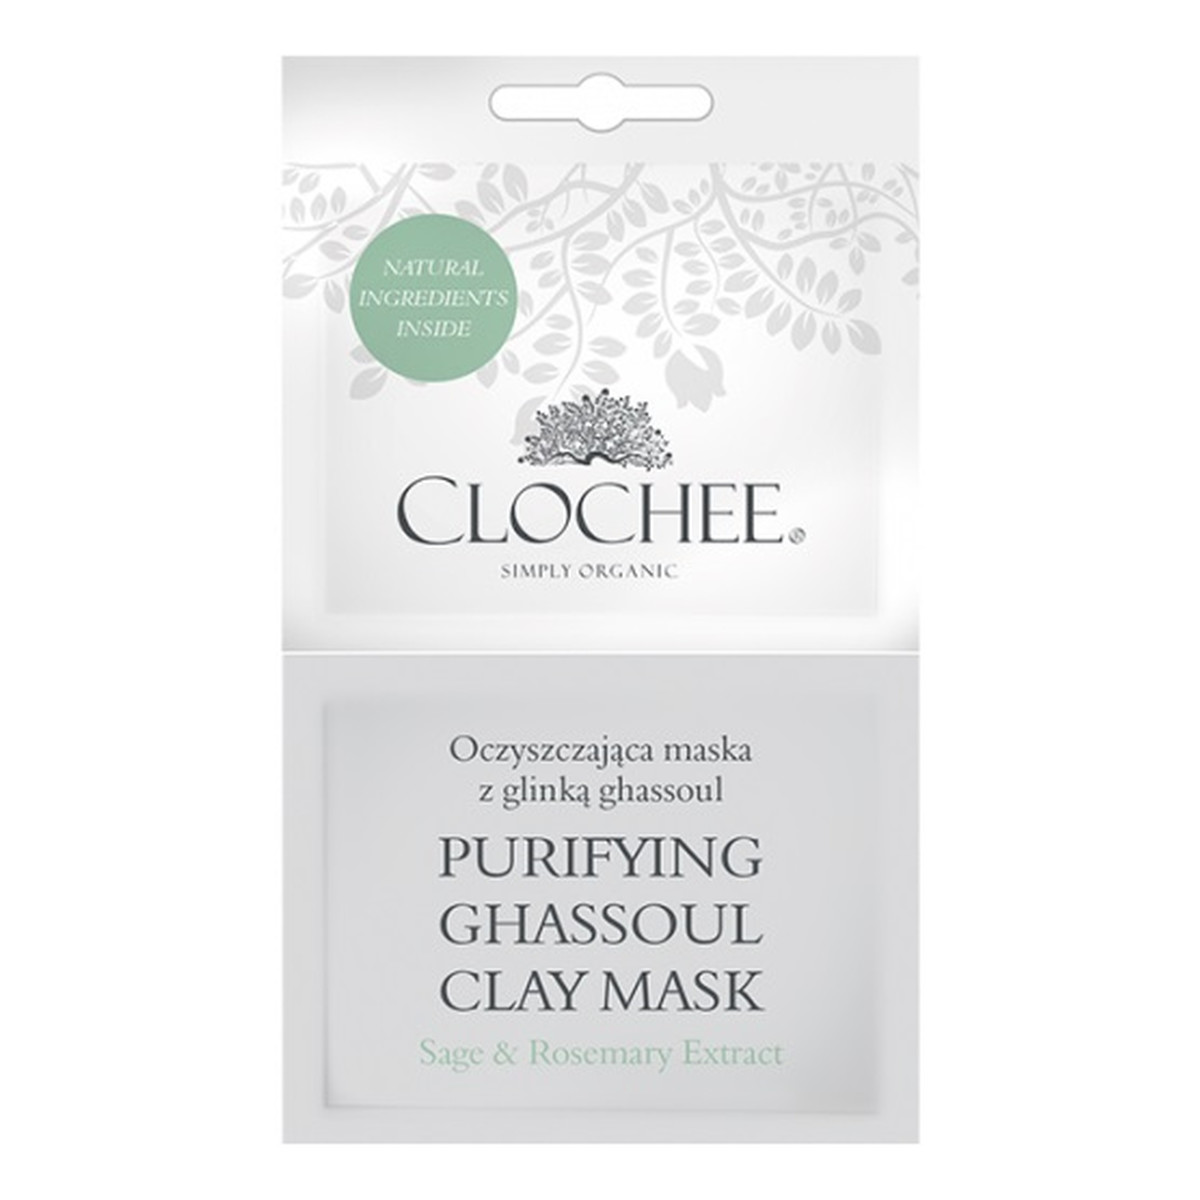 Clochee Oczyszczająca maska z glinką ghassoul 2x6ml 12ml